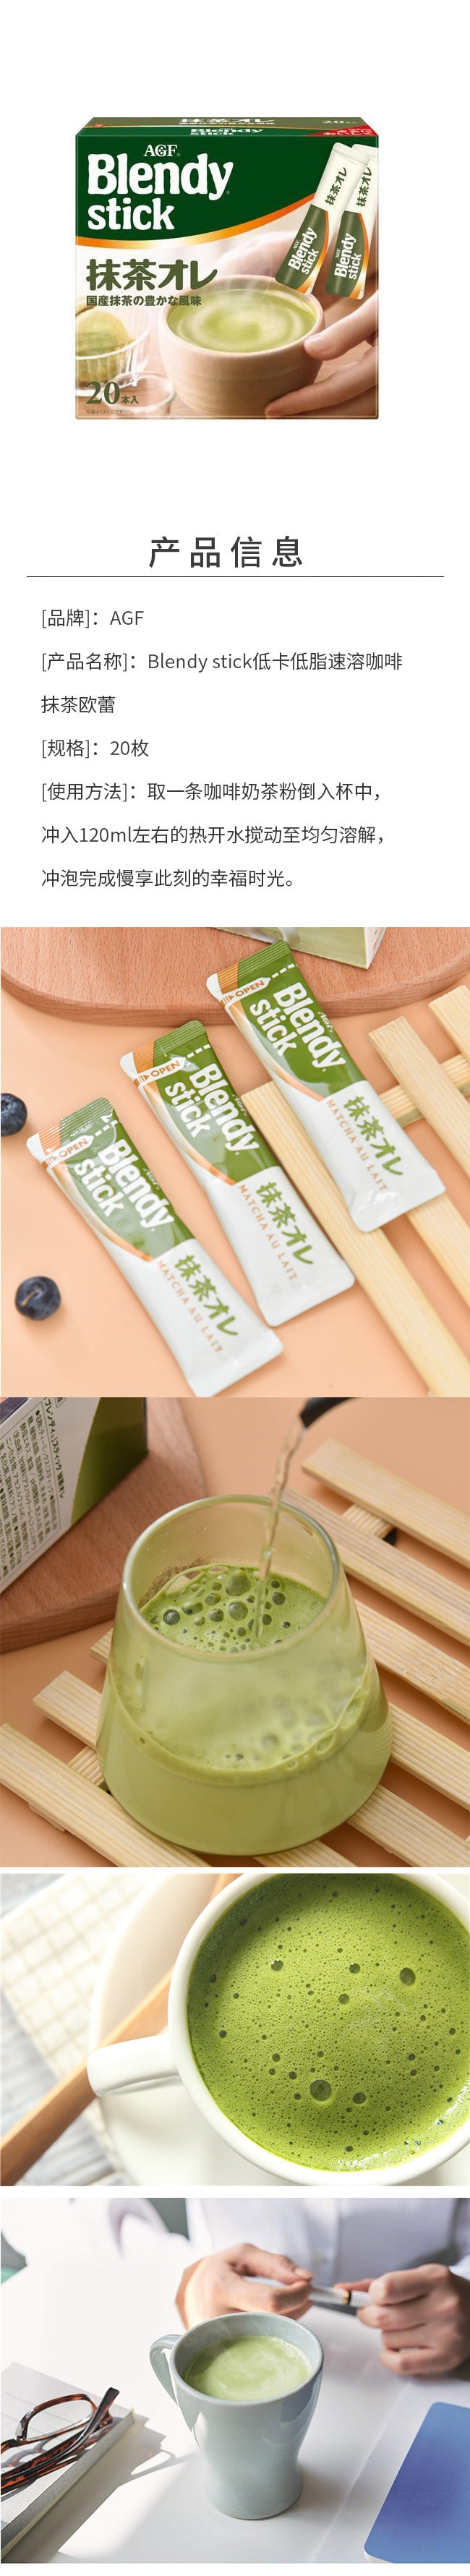 【日本直邮】AGF Blendy stick 低卡低脂速溶咖啡抹茶欧蕾 20枚入